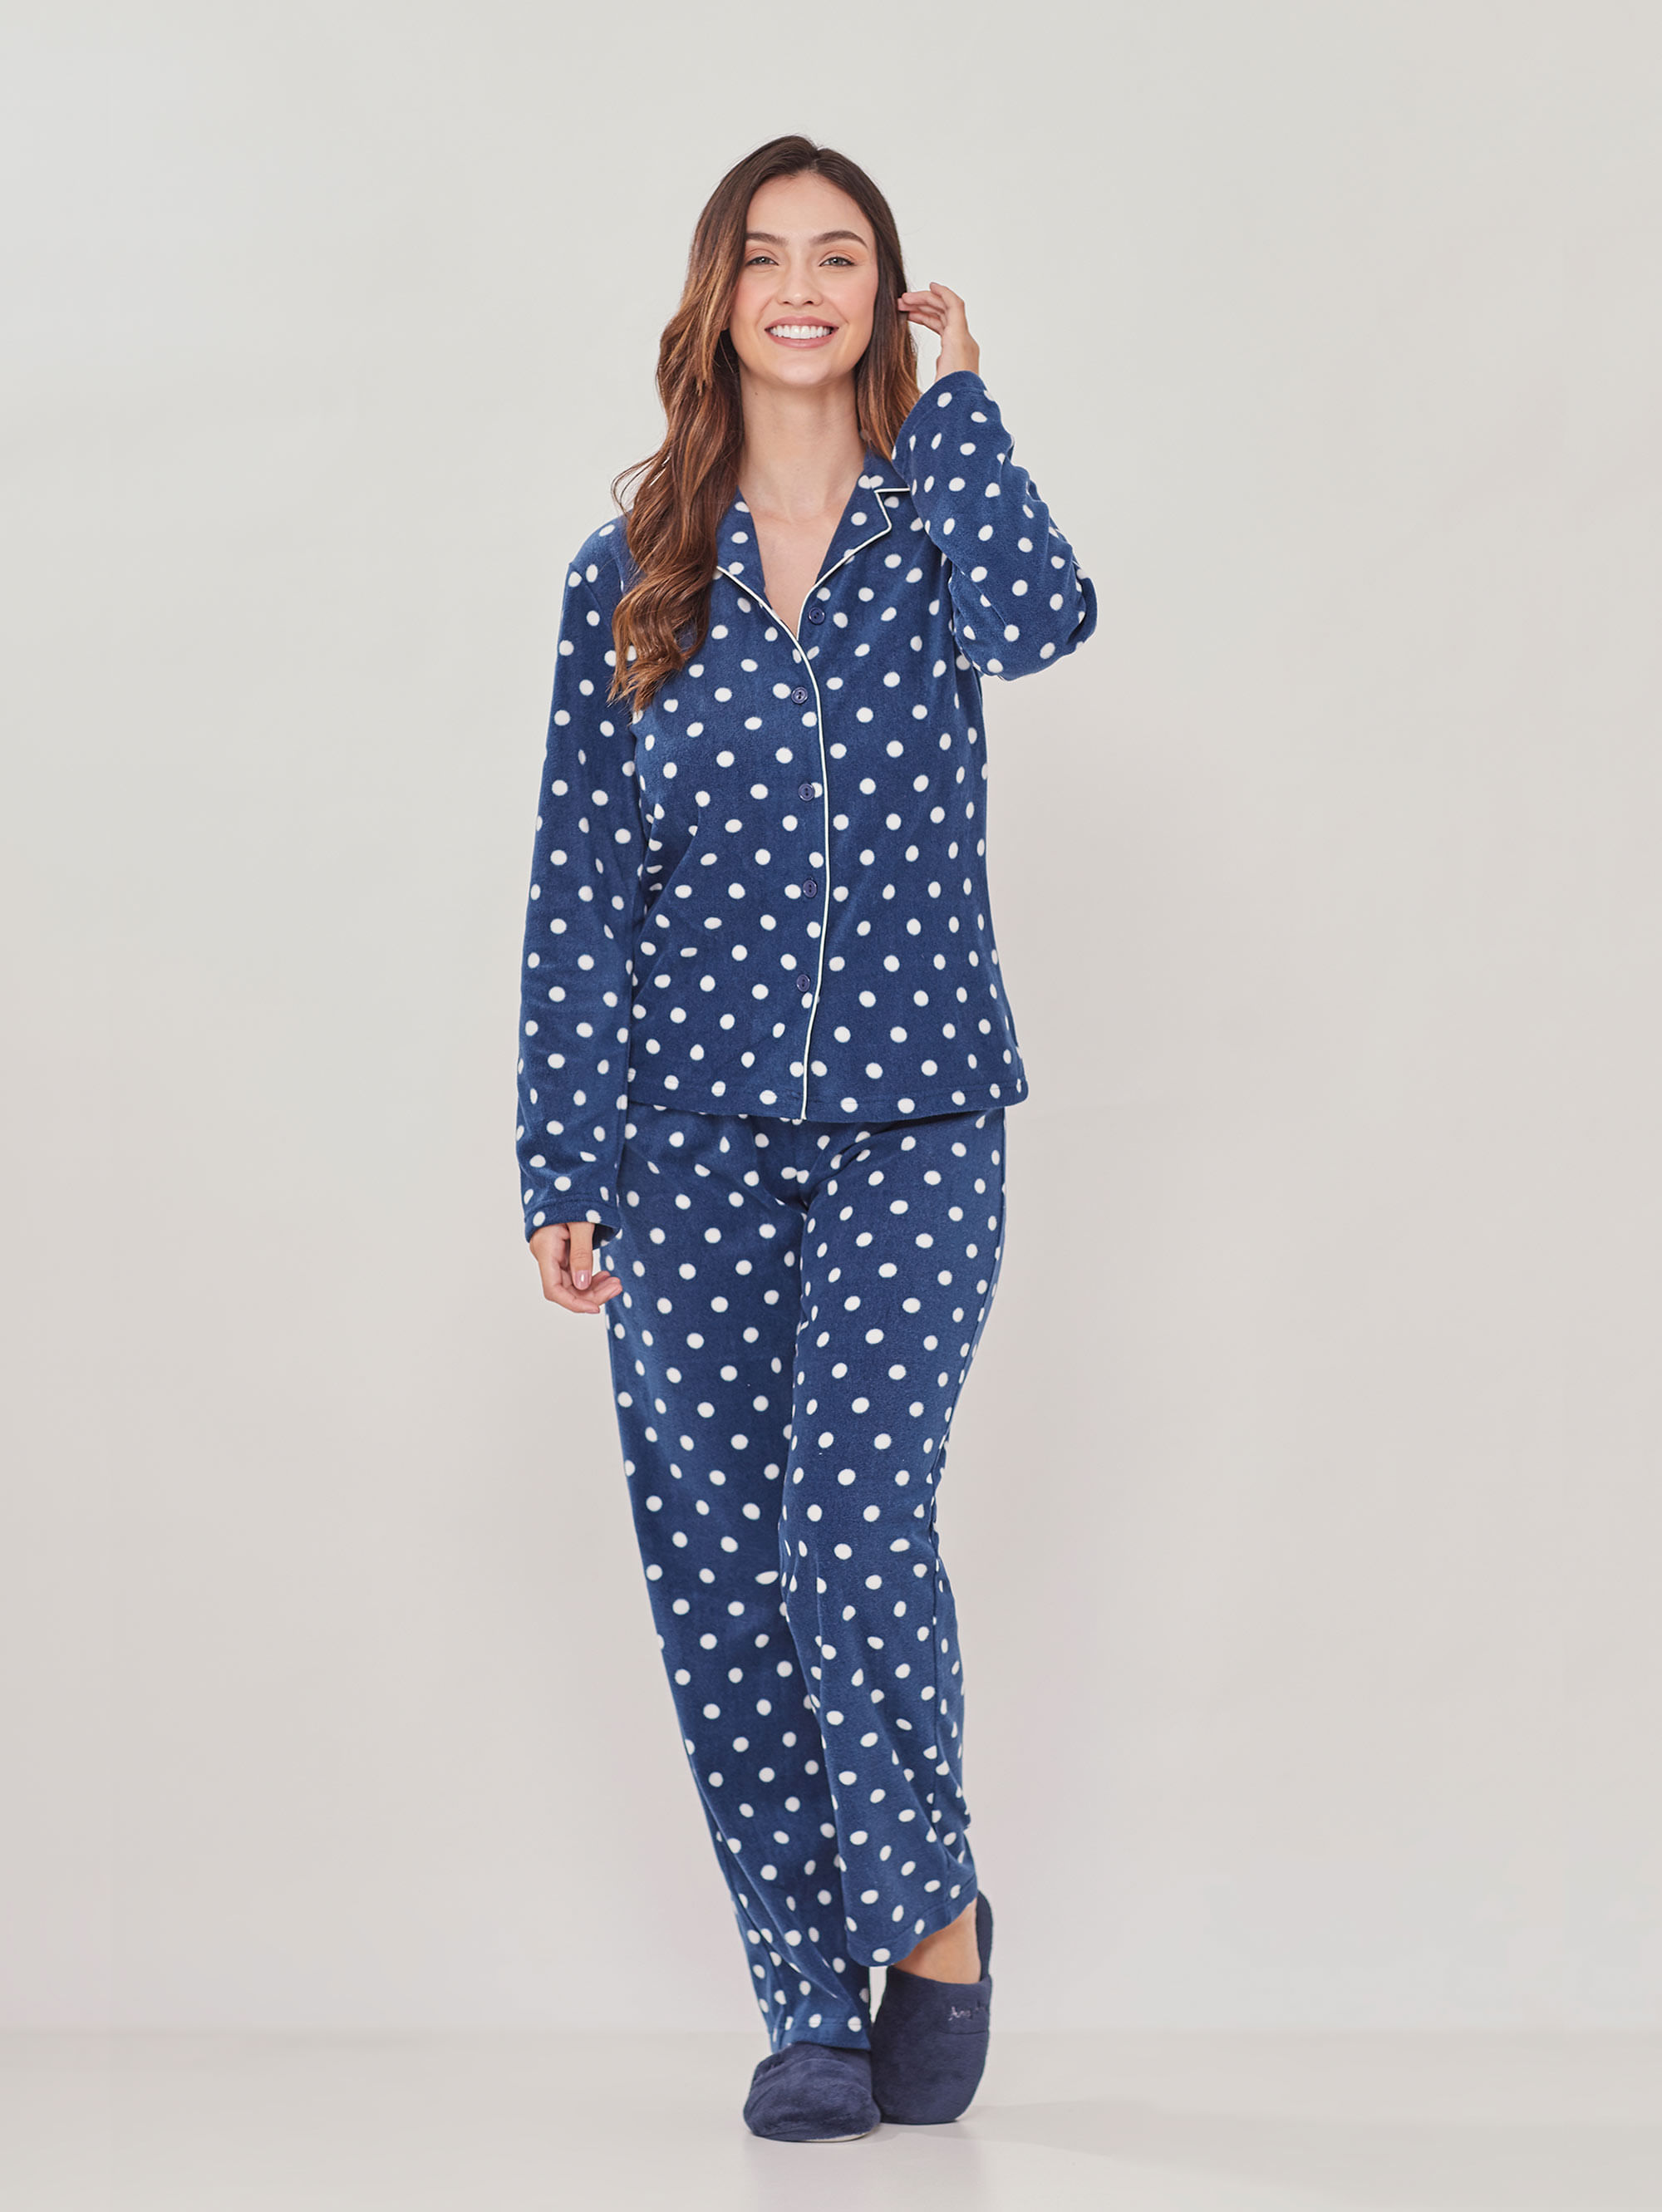 Pijama Any Any soft feminino